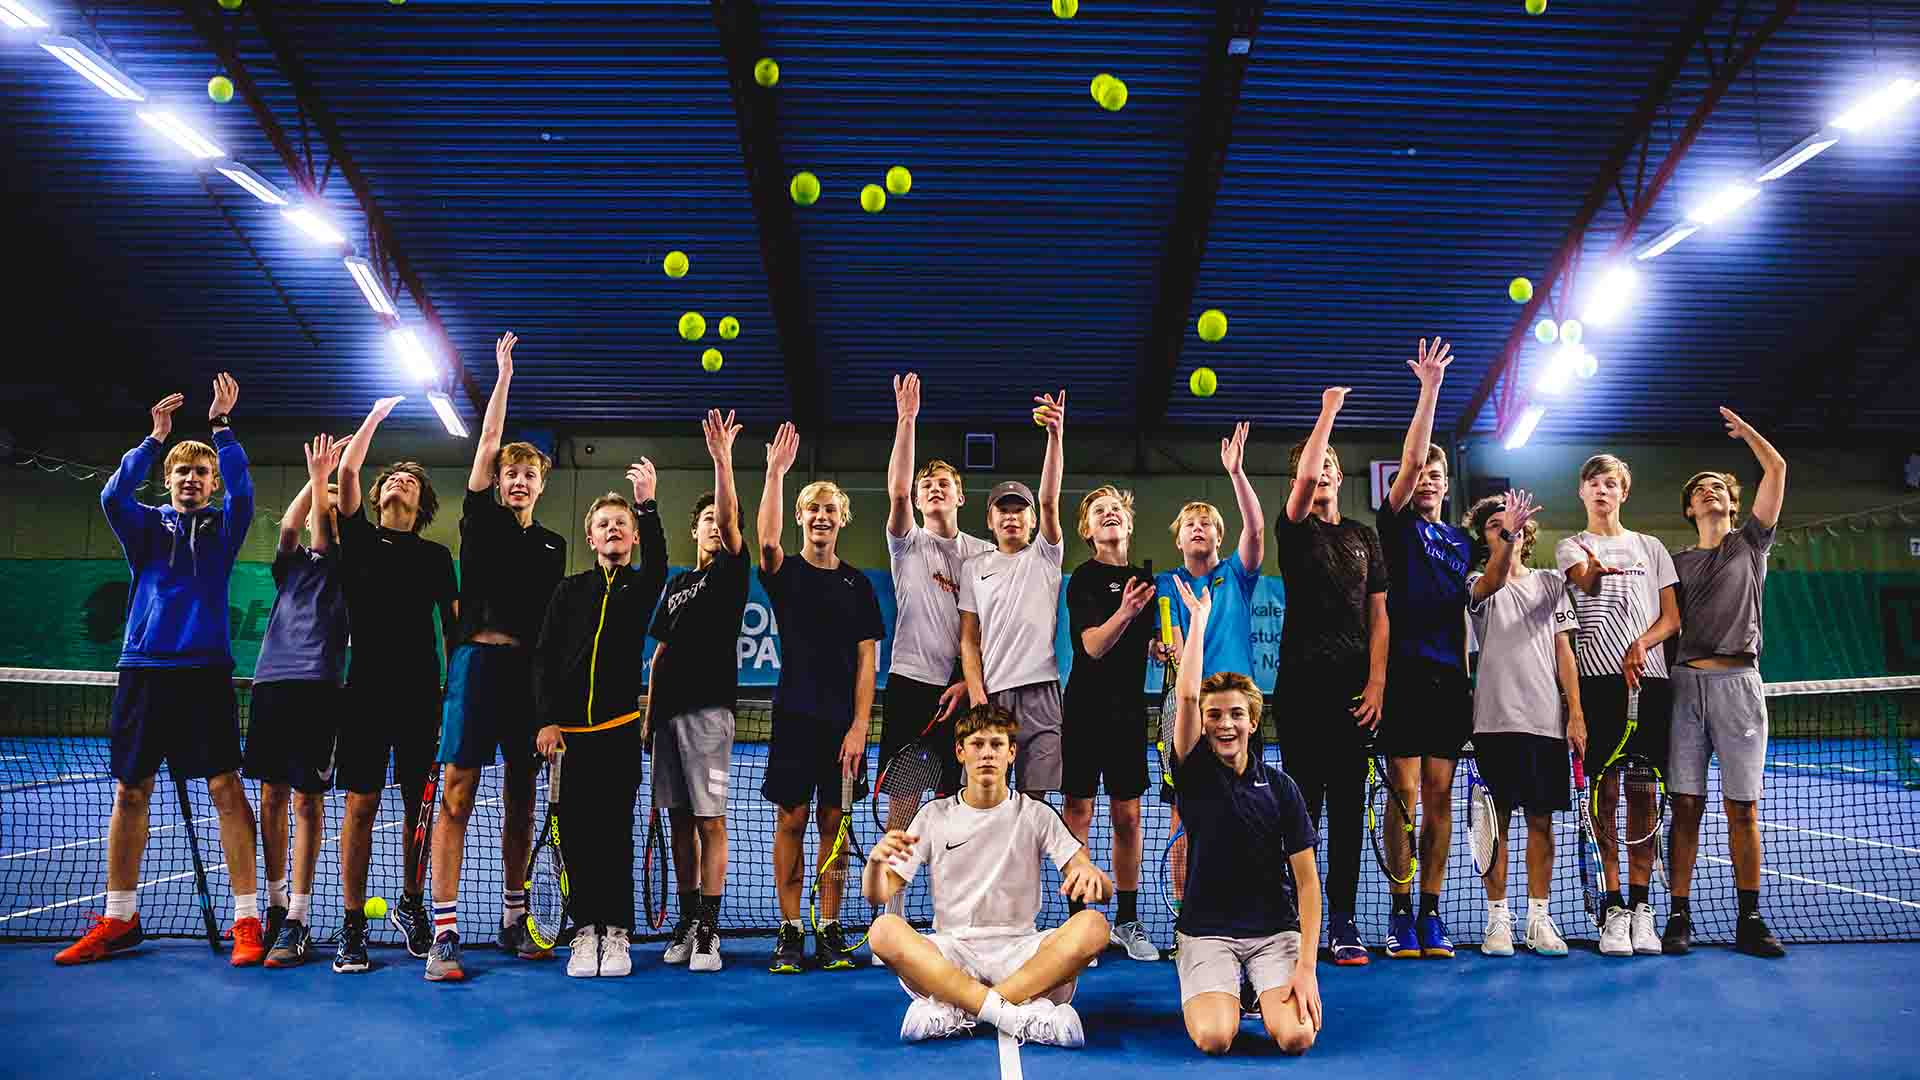 Stavanger Tennisklubb har hatt kjempesuksess med å beholde ungdom gjennom en rekke tiltak. Foto: Alexander Eriksson